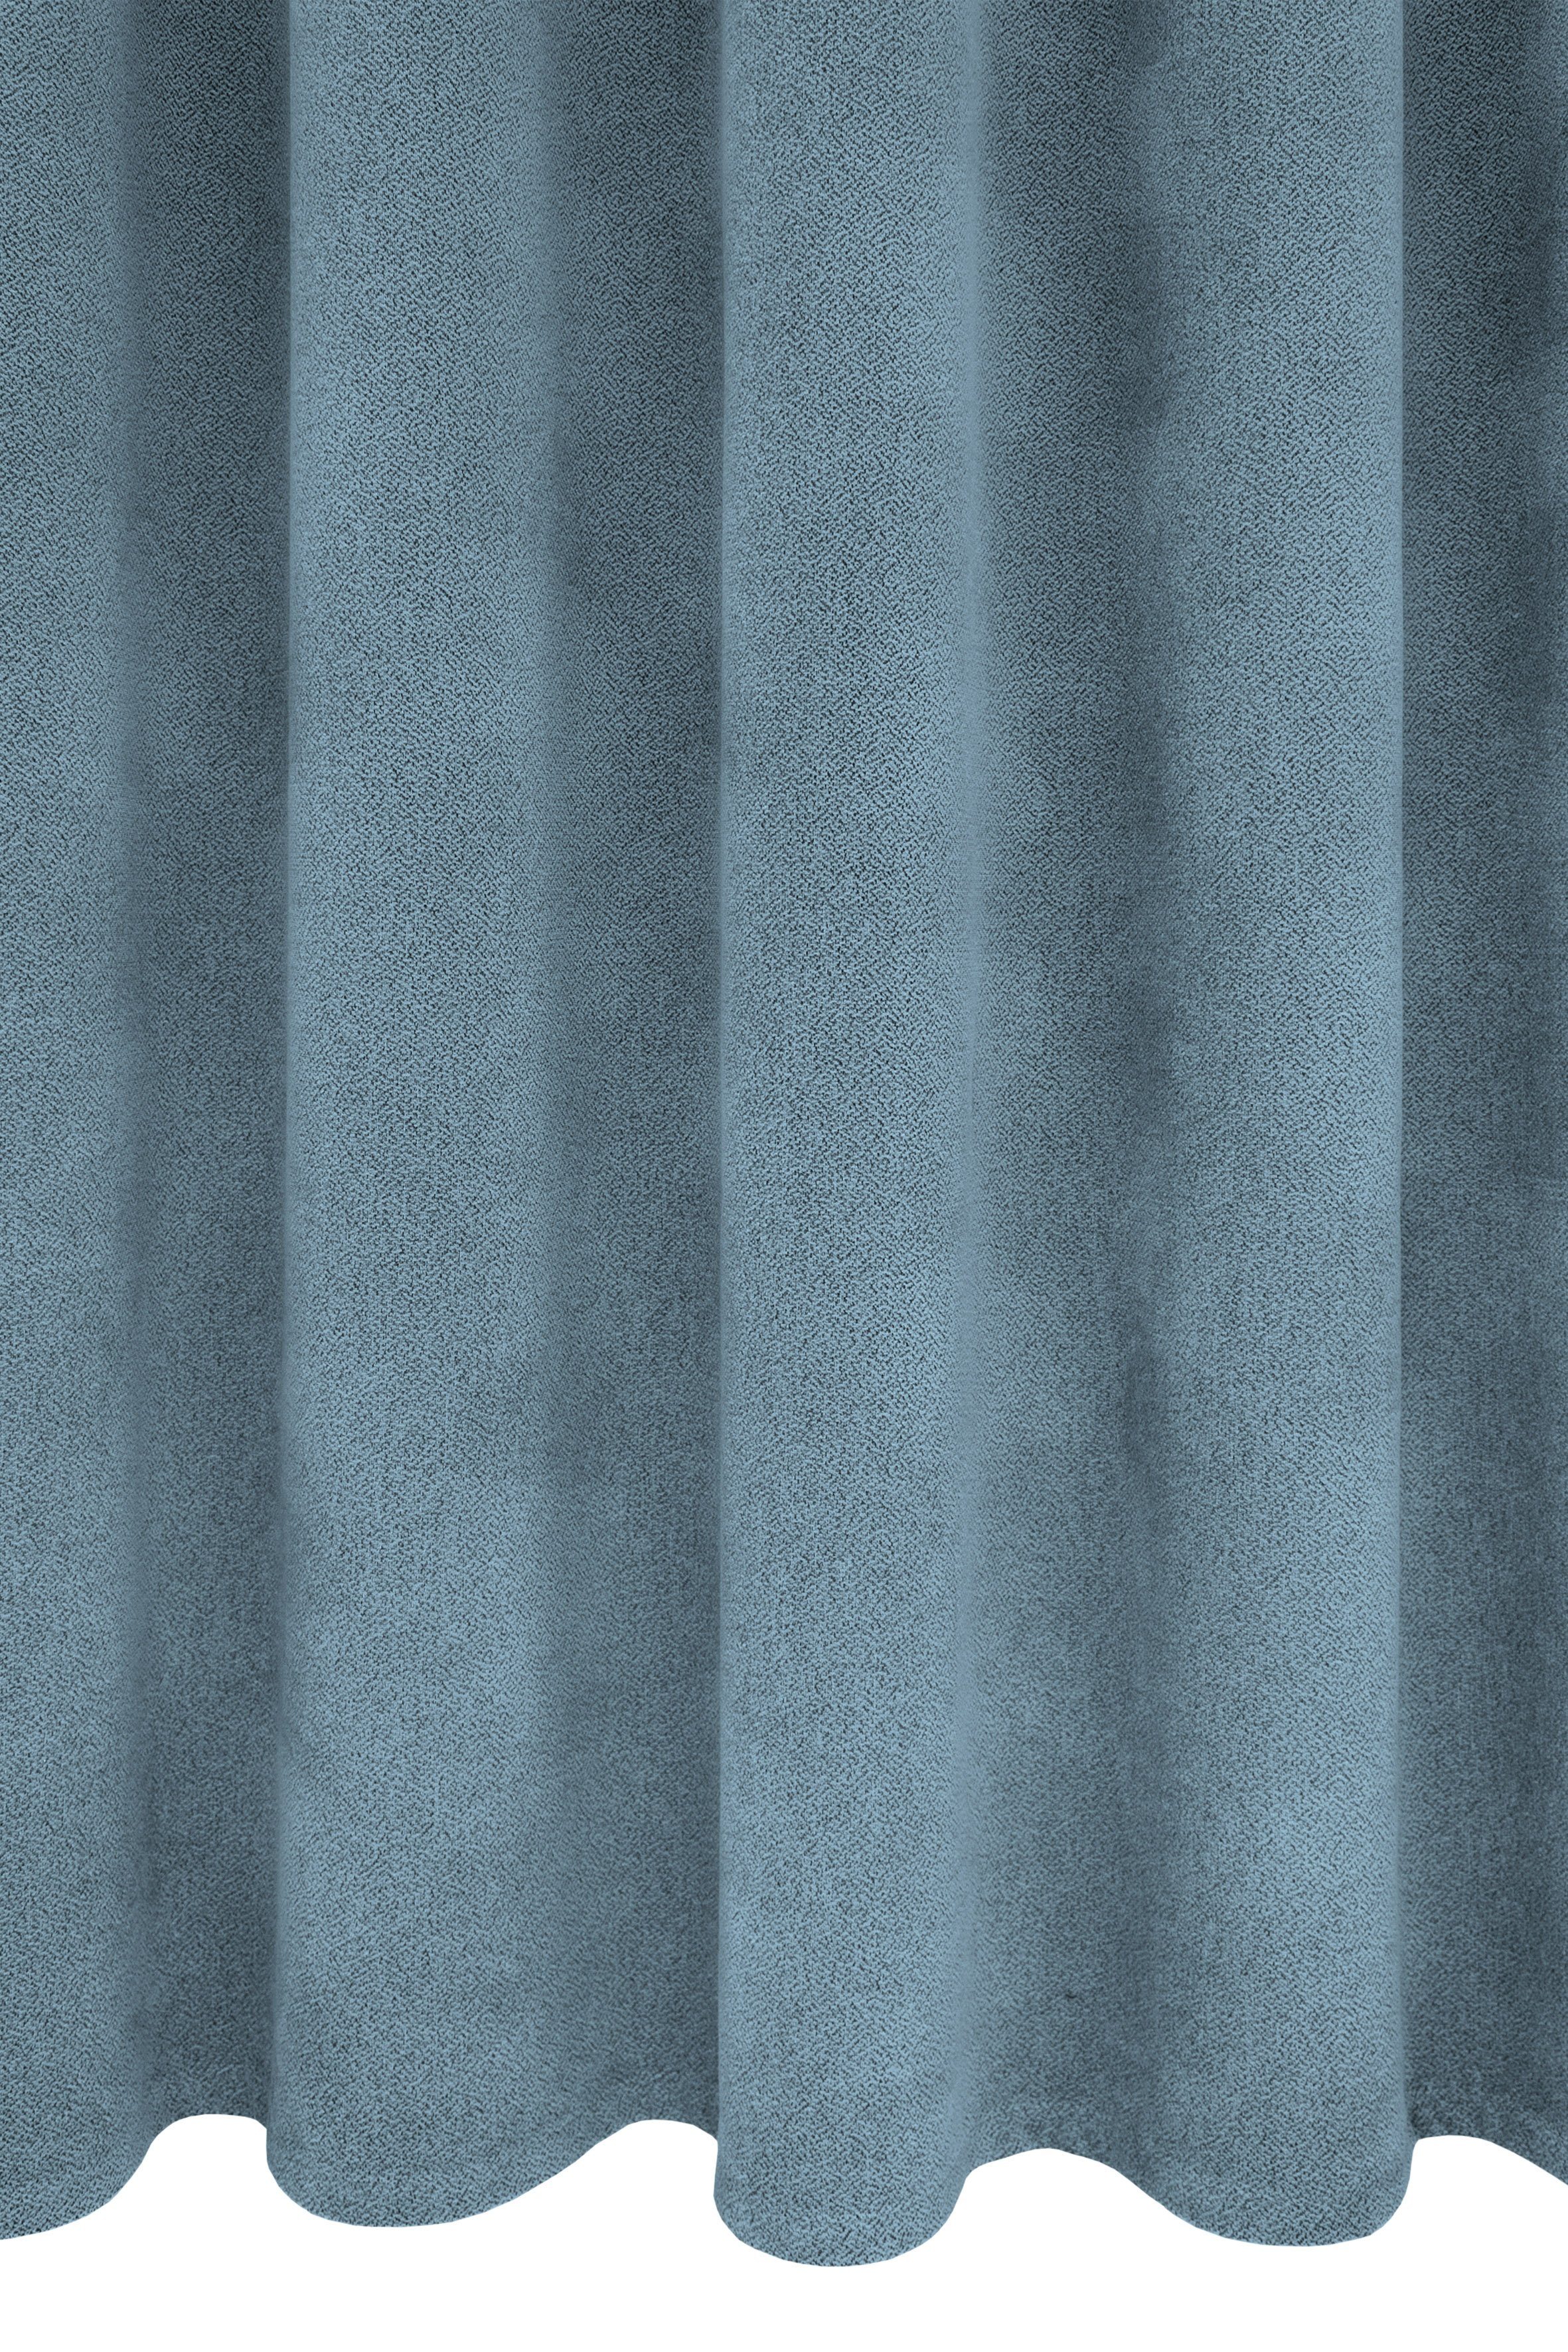 Vorhang Alea, VHG, Ösen (1 Wärmeschutz, verdunkelnd, Kälteschutz, 145cm, sparend, hellblau g/²m einfarbig, Energie St), Polyester, 415 Breite